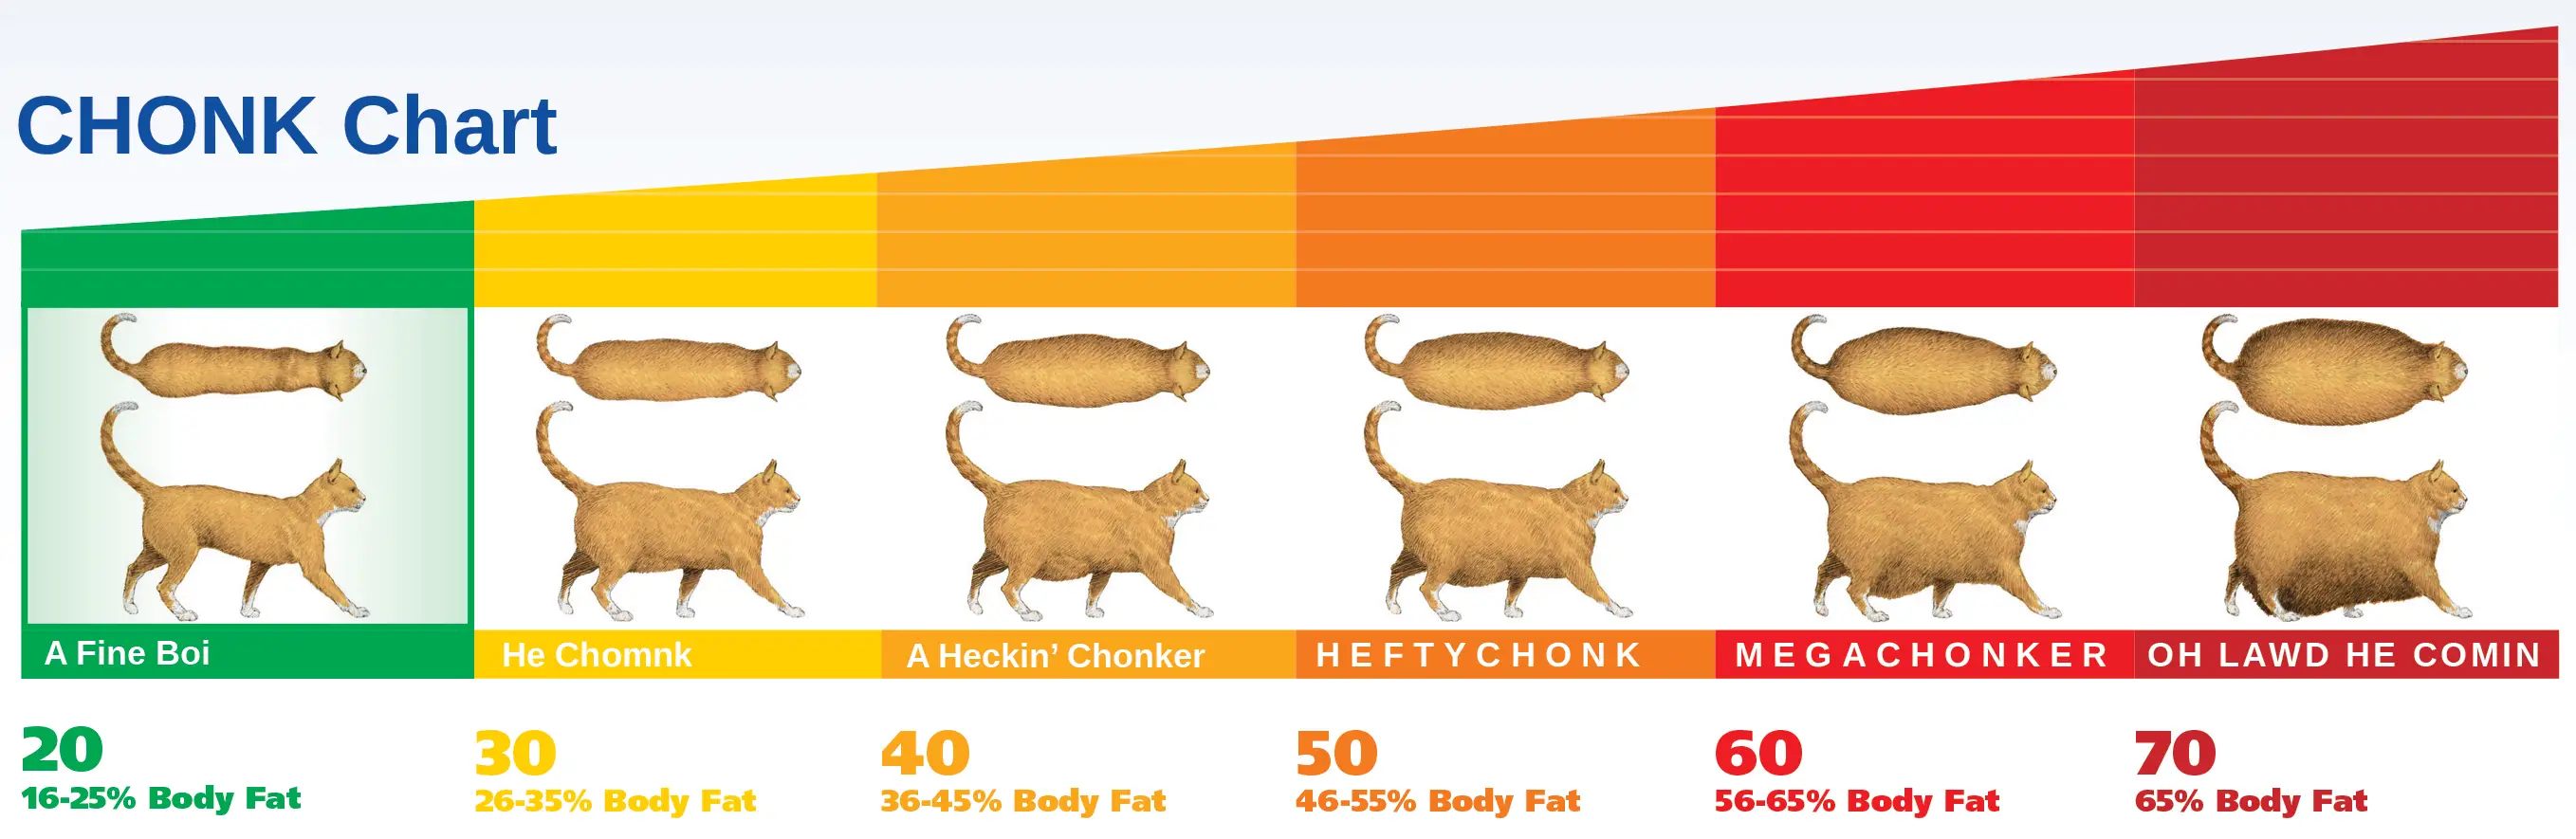 chonk chart cat